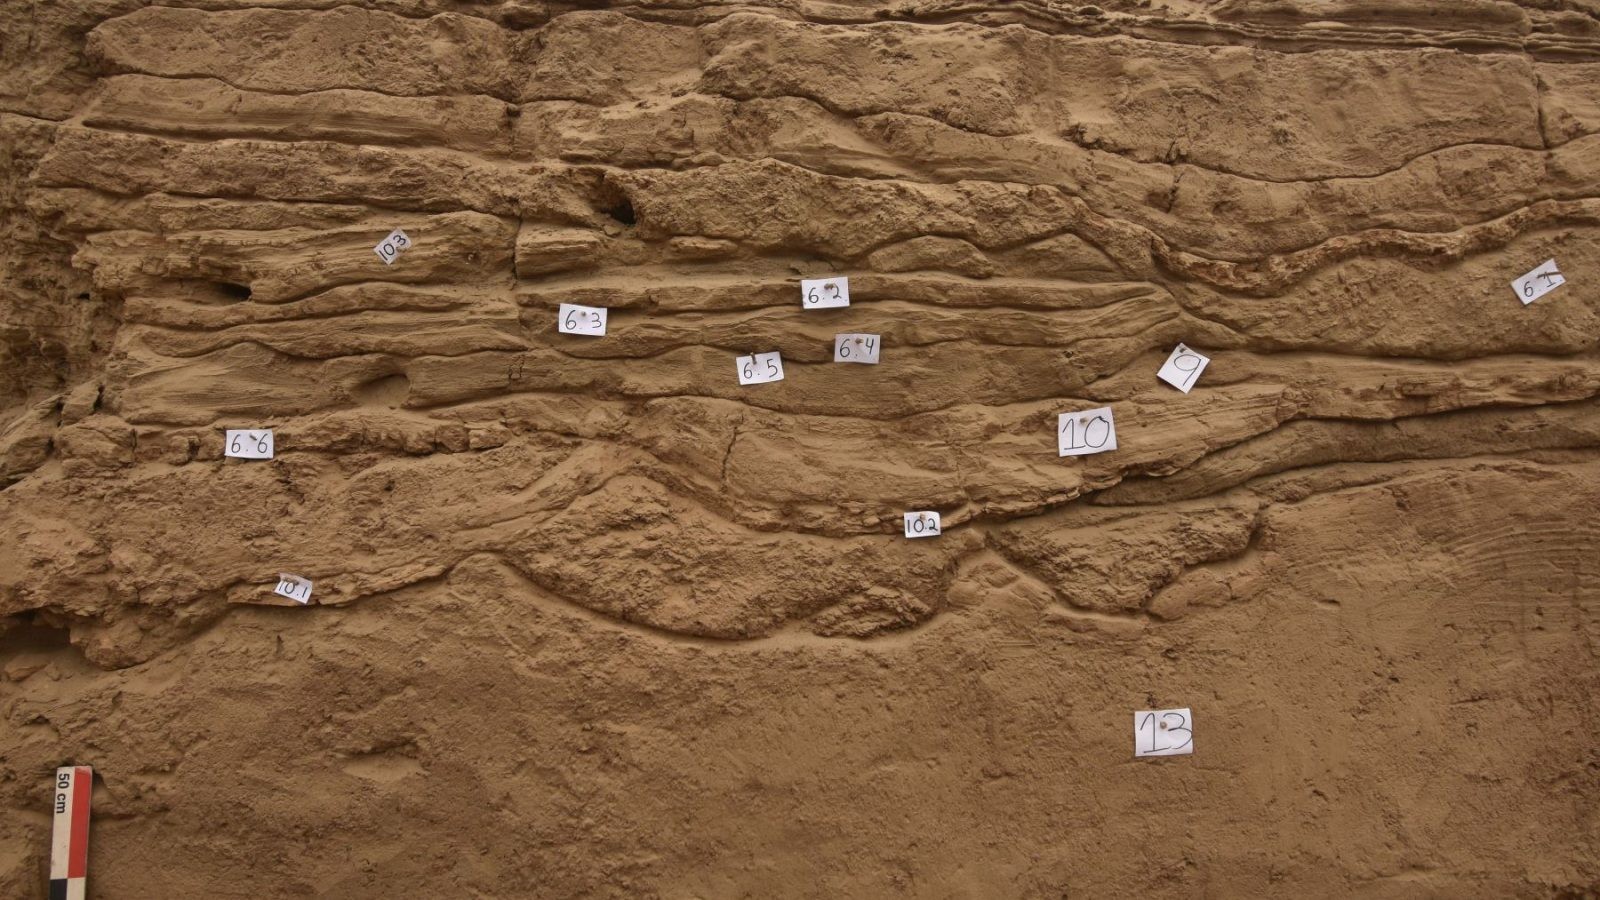 Archeolodzy natrafili na 1000-letni mur. Jego twórcy chcieli zatrzymać coś znacznie potężniejszego od ludzi 